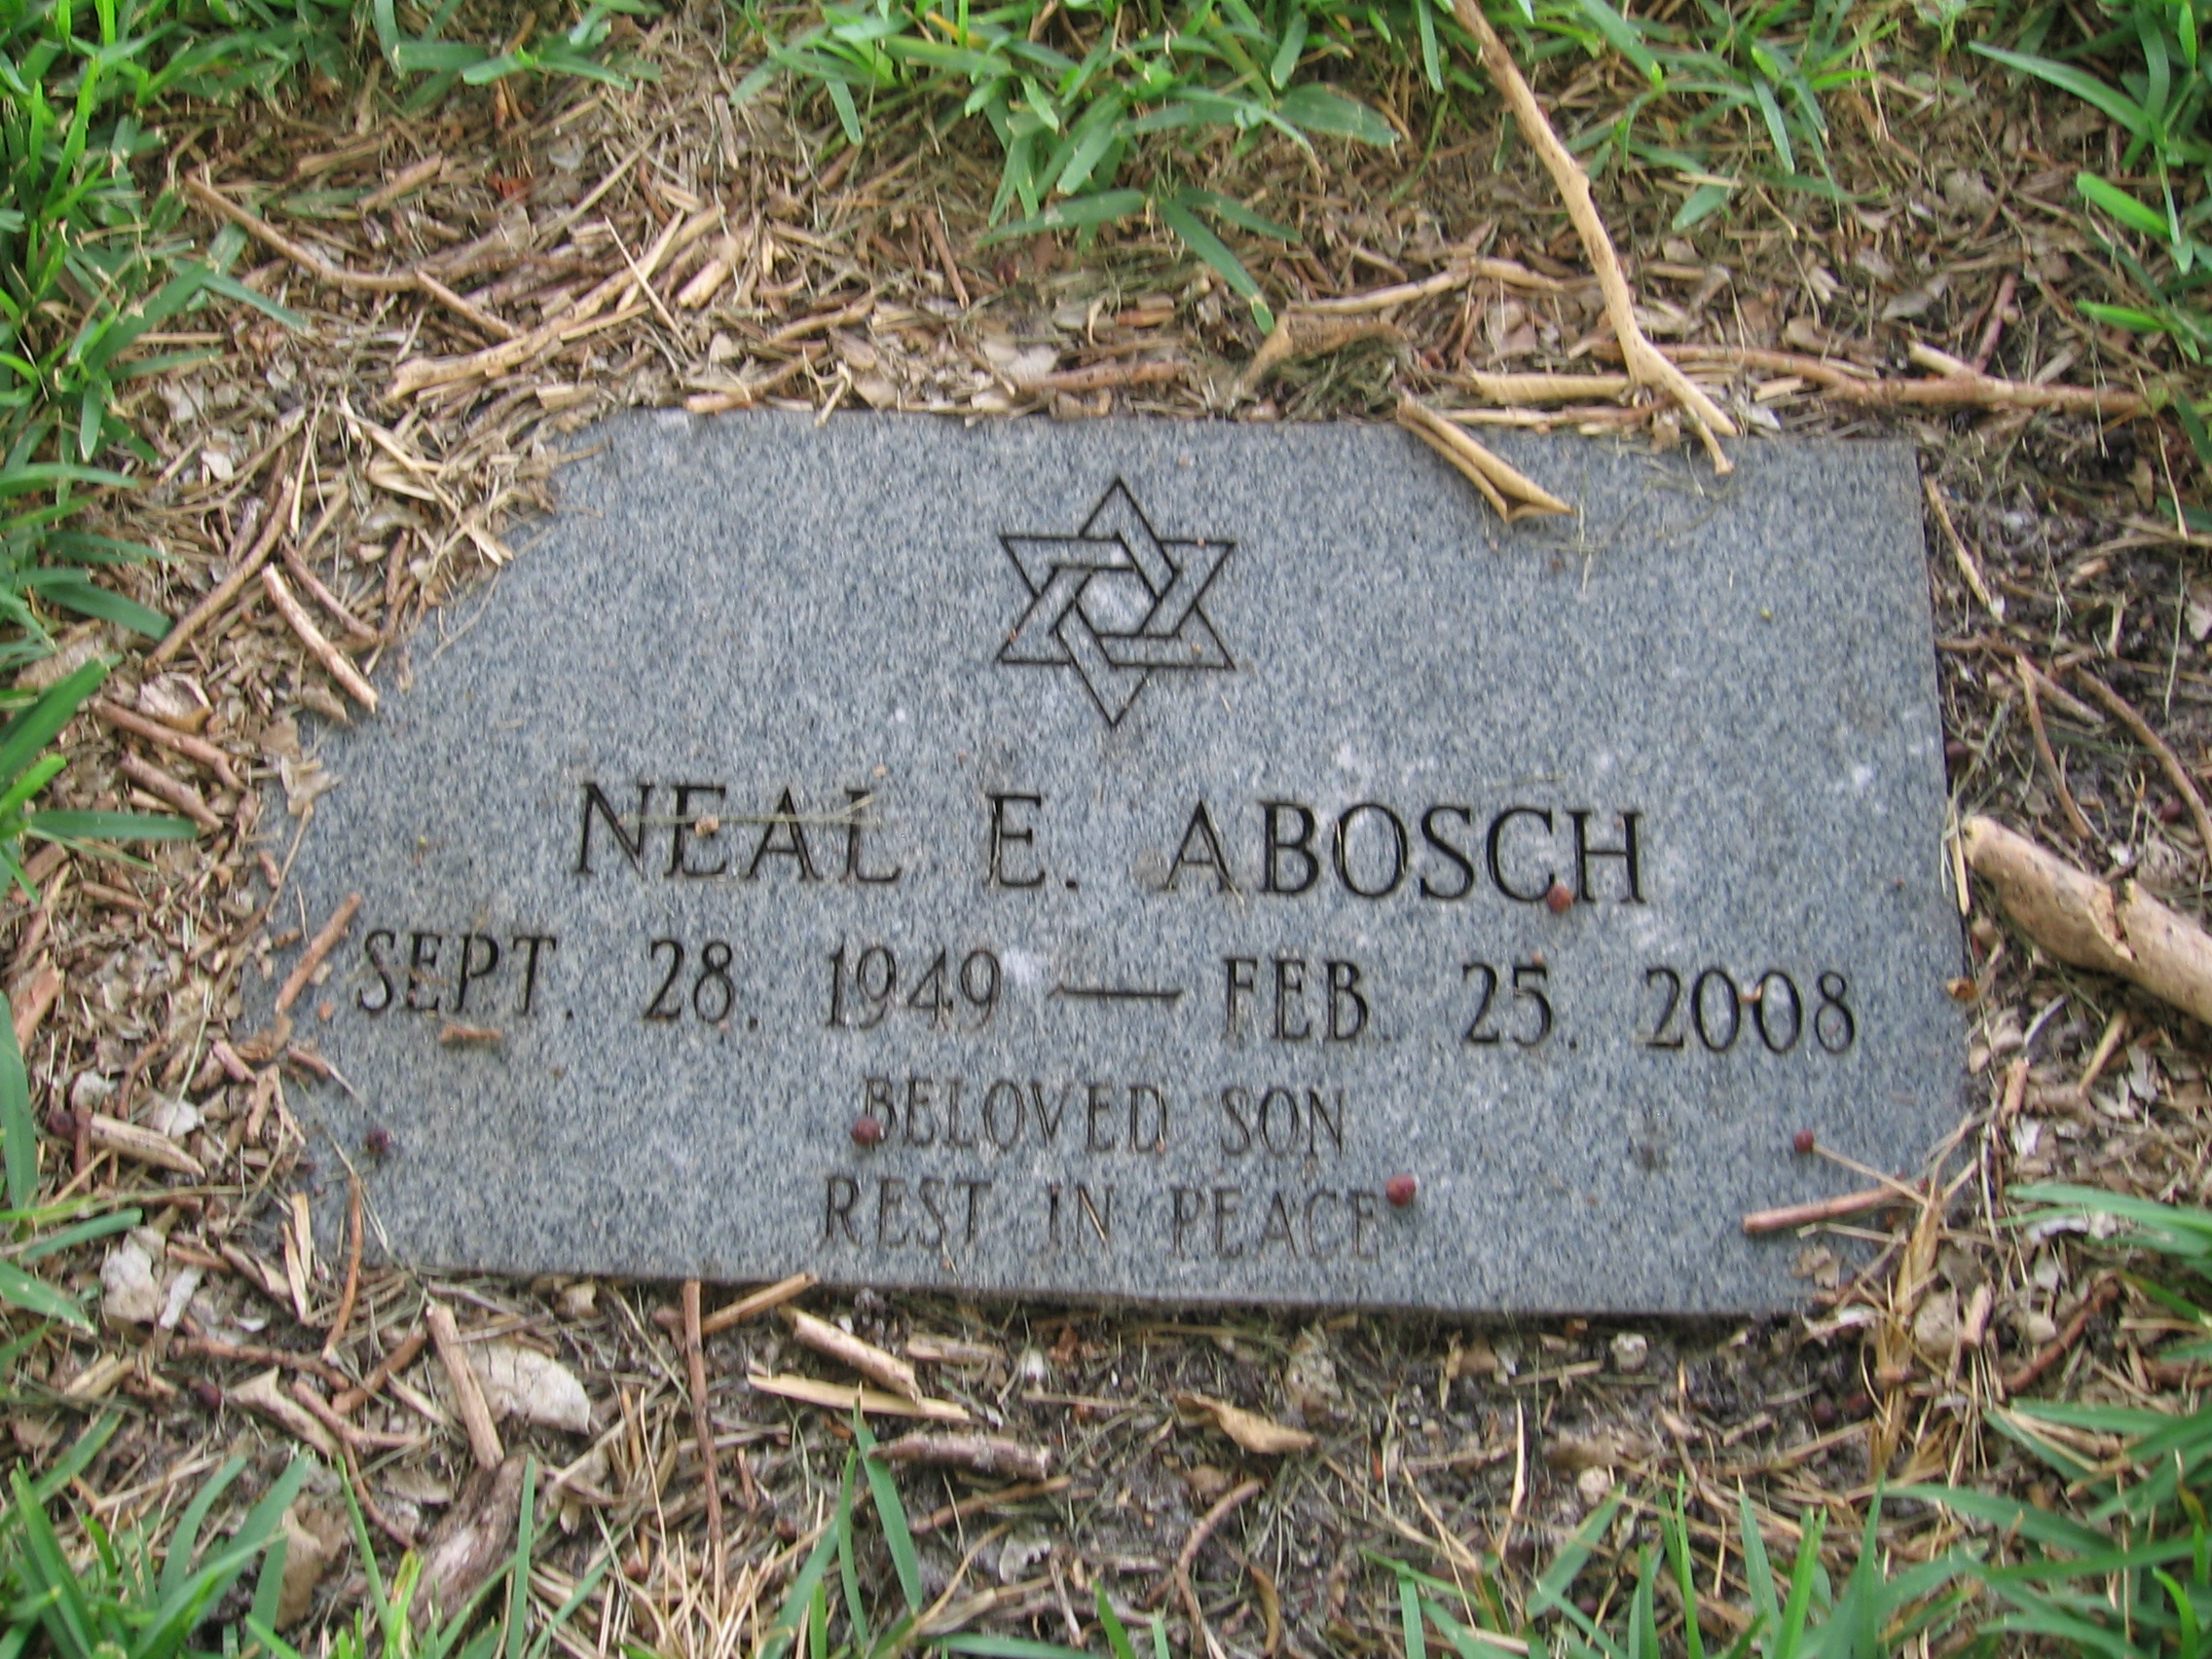 Neal E Abosch